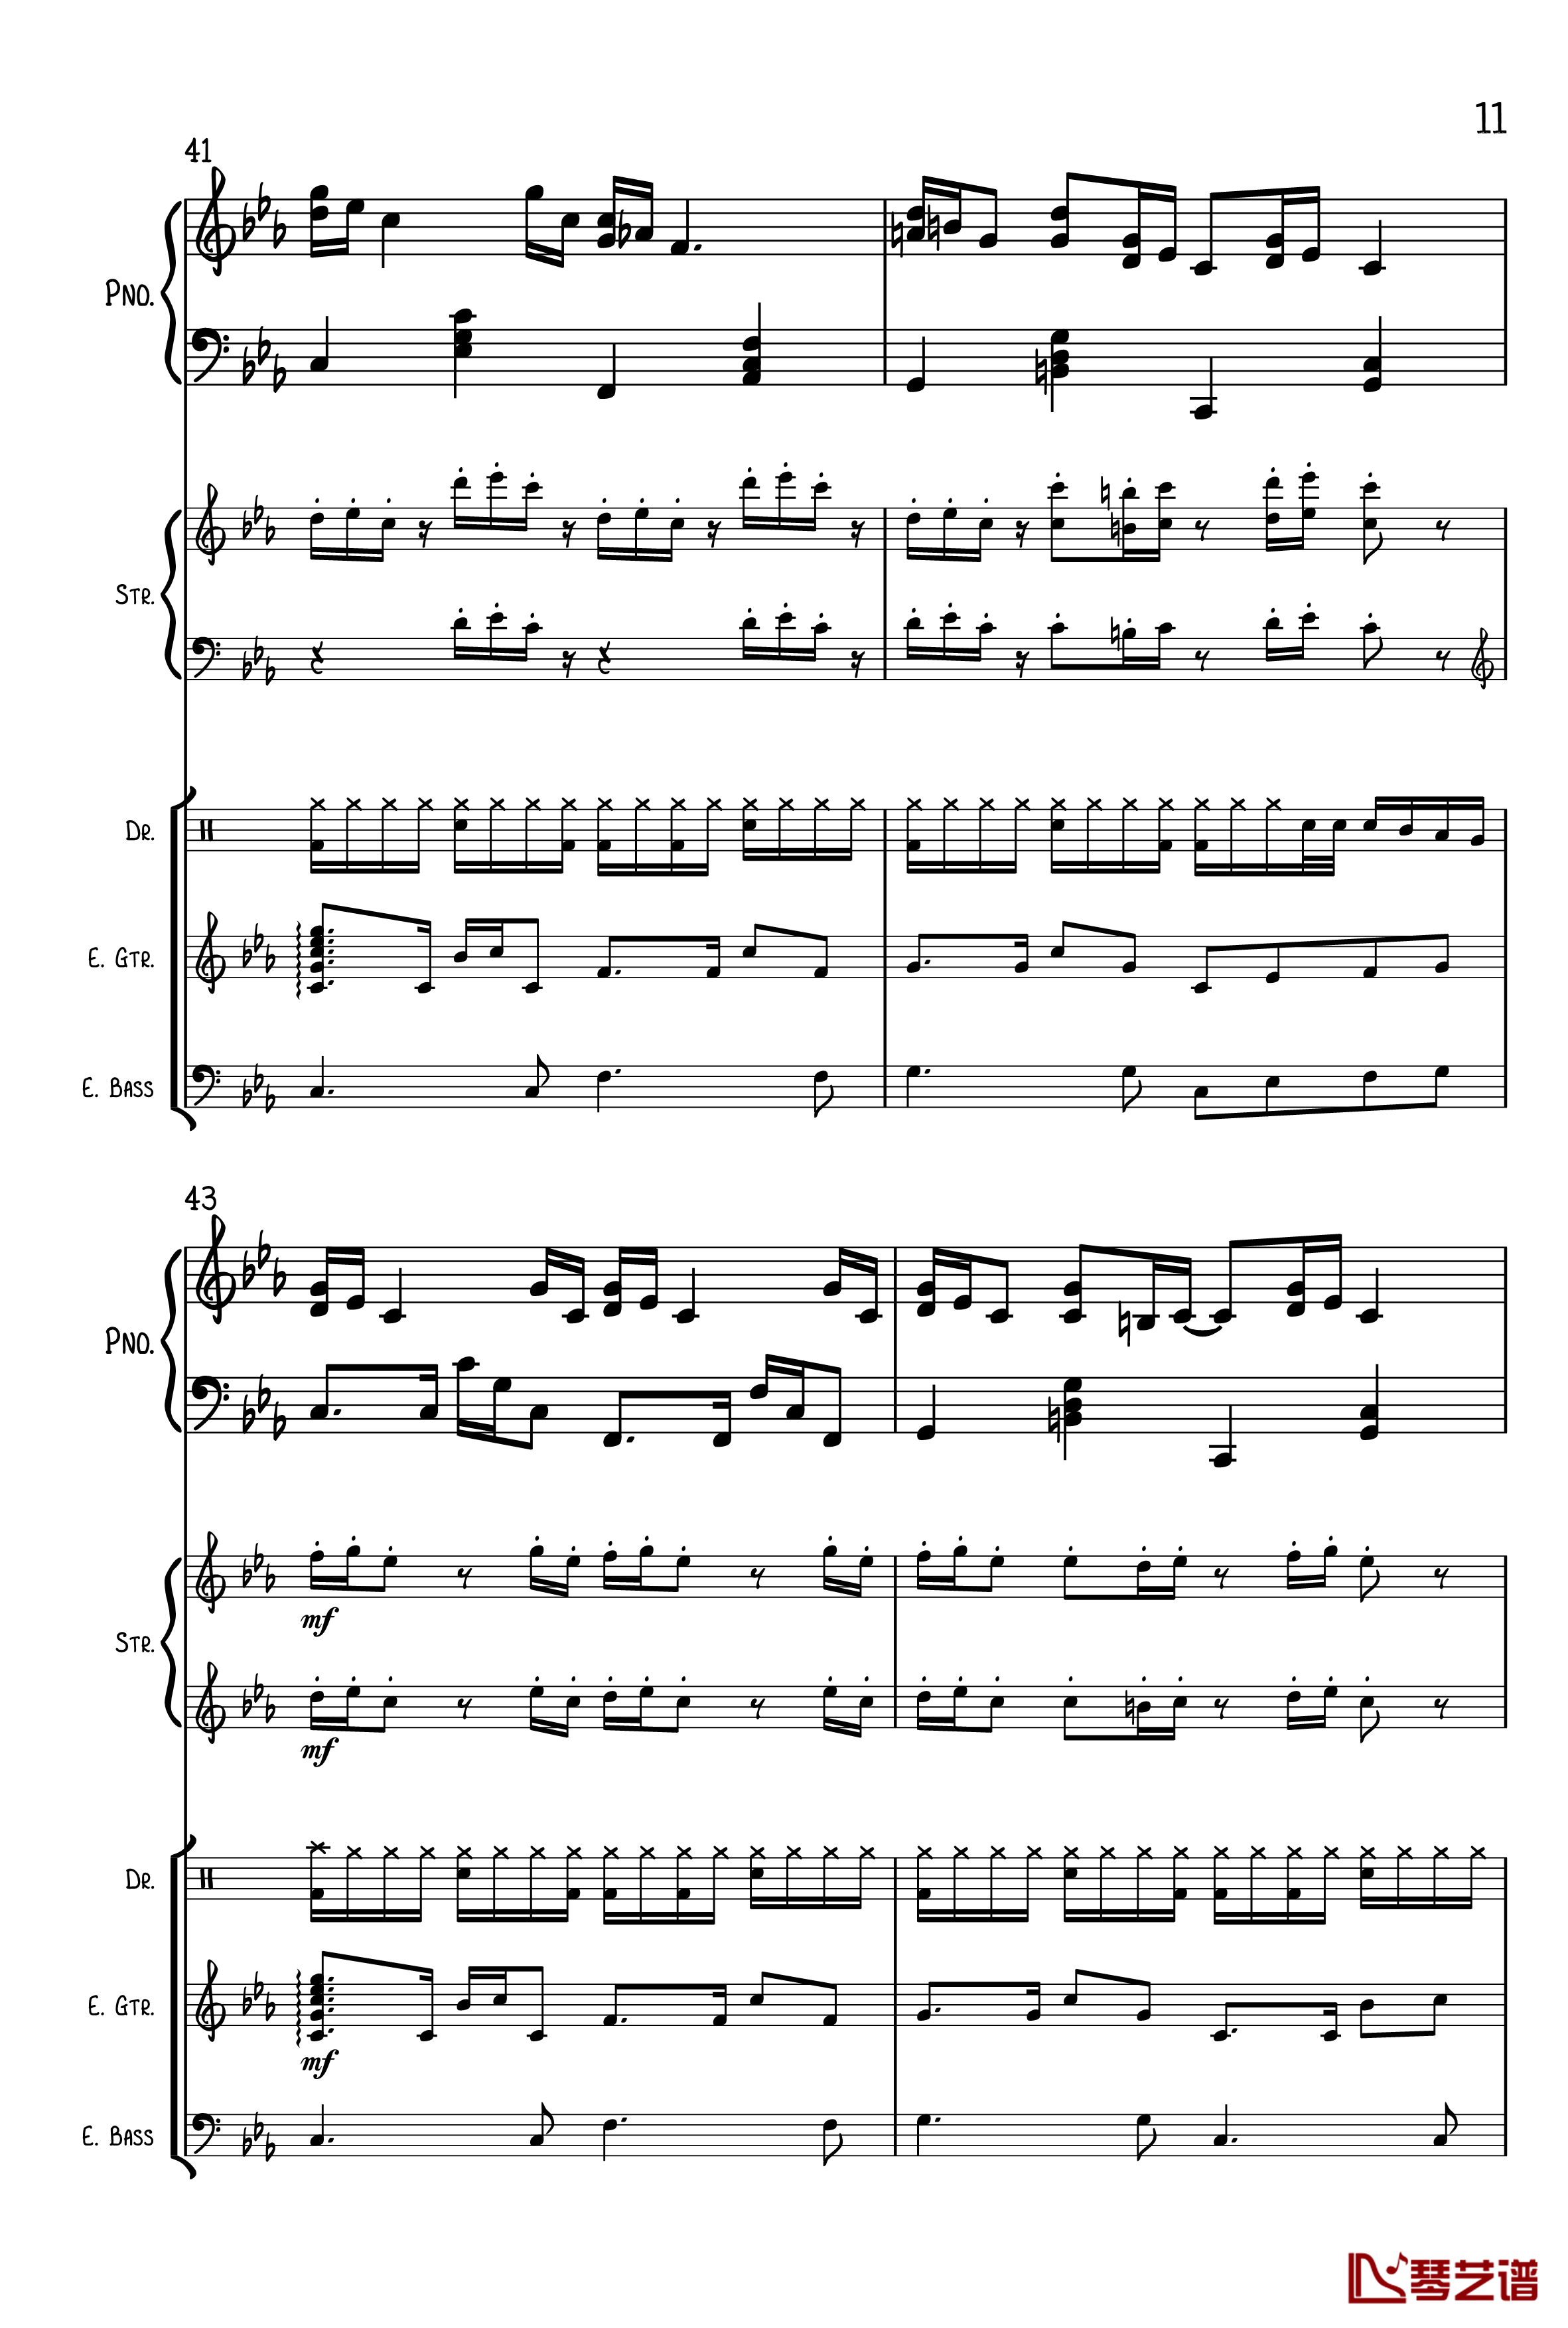 克罗地亚狂想曲钢琴谱-总谱-马克西姆-Maksim·Mrvica11